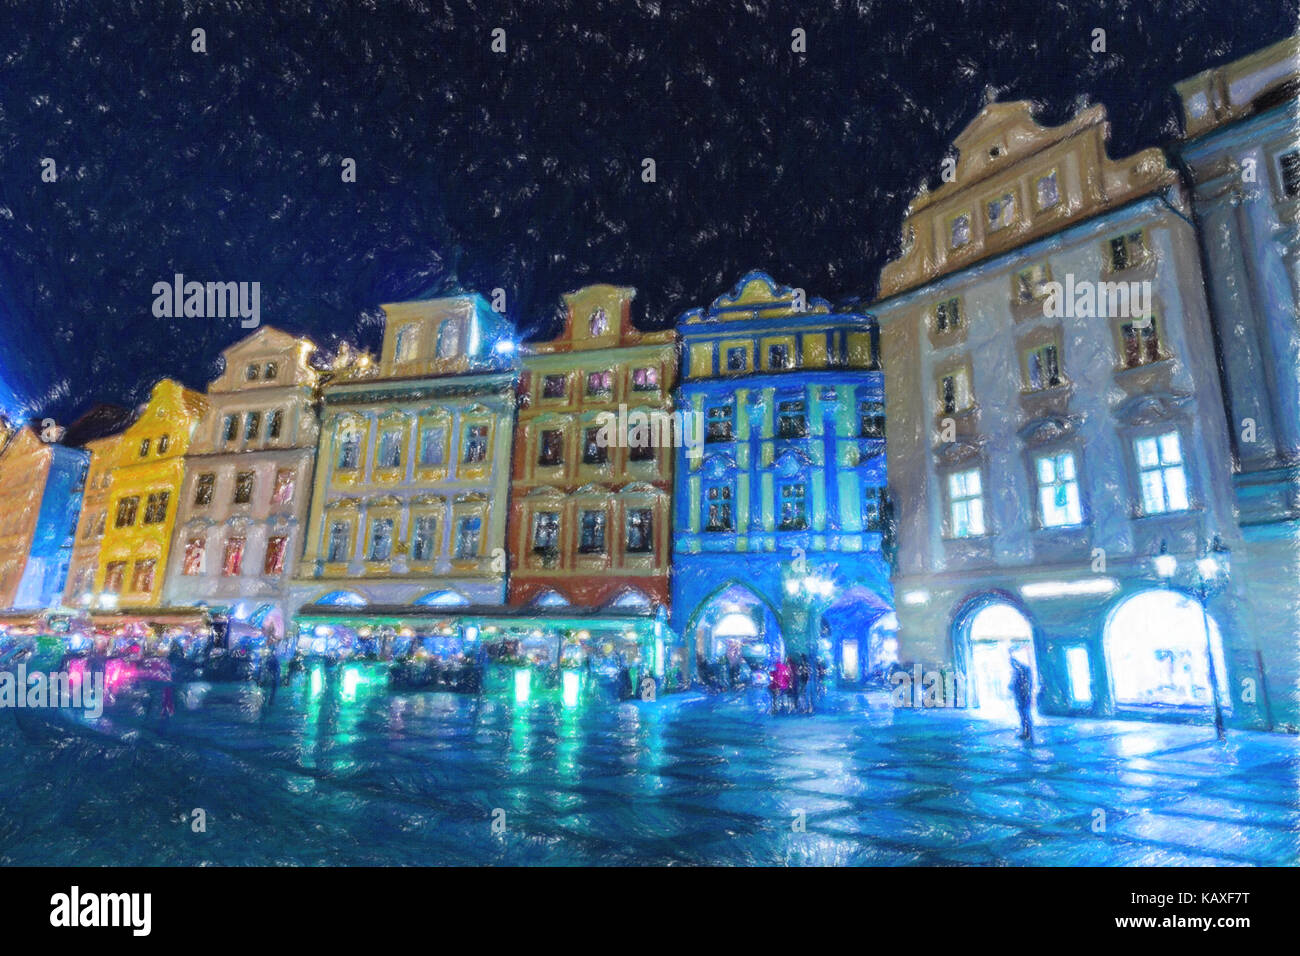 Dessin au crayon de la place de la vieille ville (Staromestske namesti) à Prague : bâtiments, maisons et marché Banque D'Images